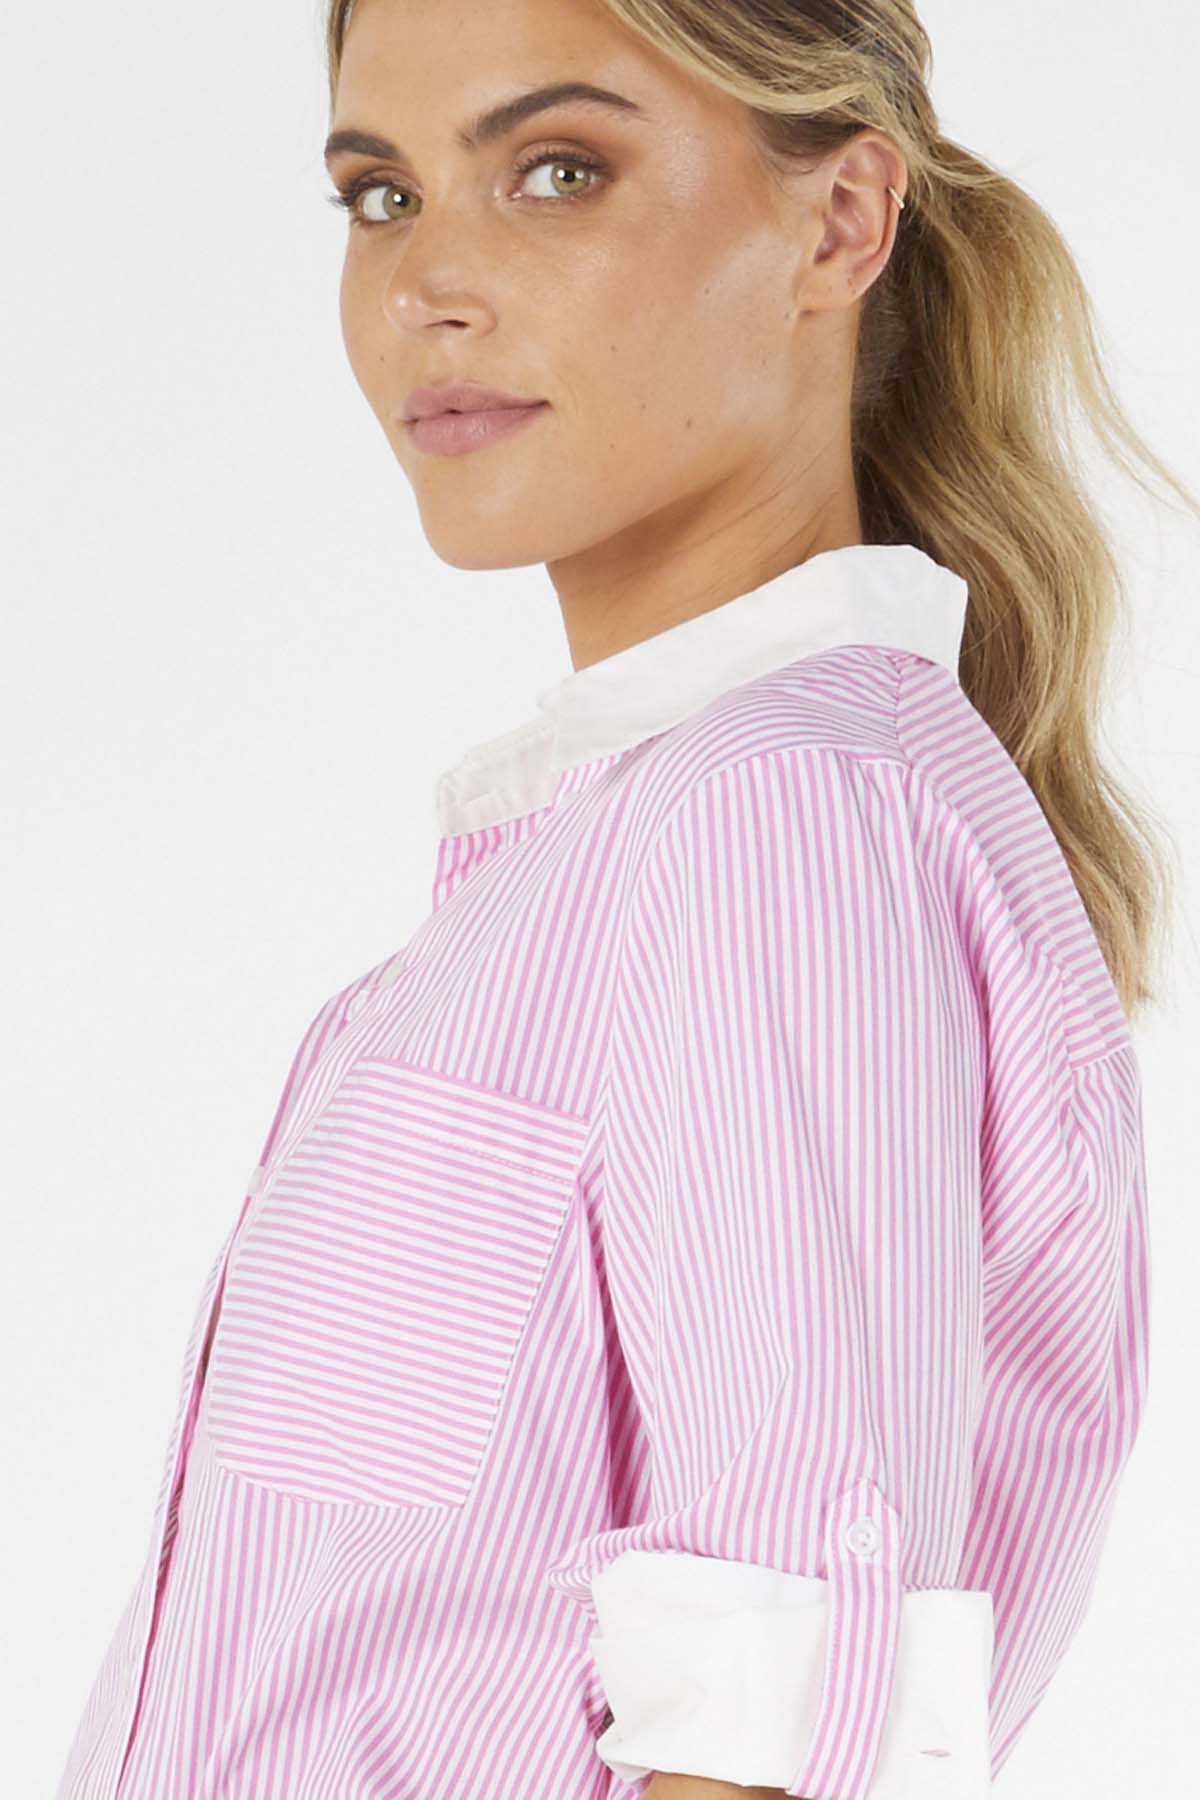 Betty Basics Heston Shirt in Pink Pinstripe - Hey Sara